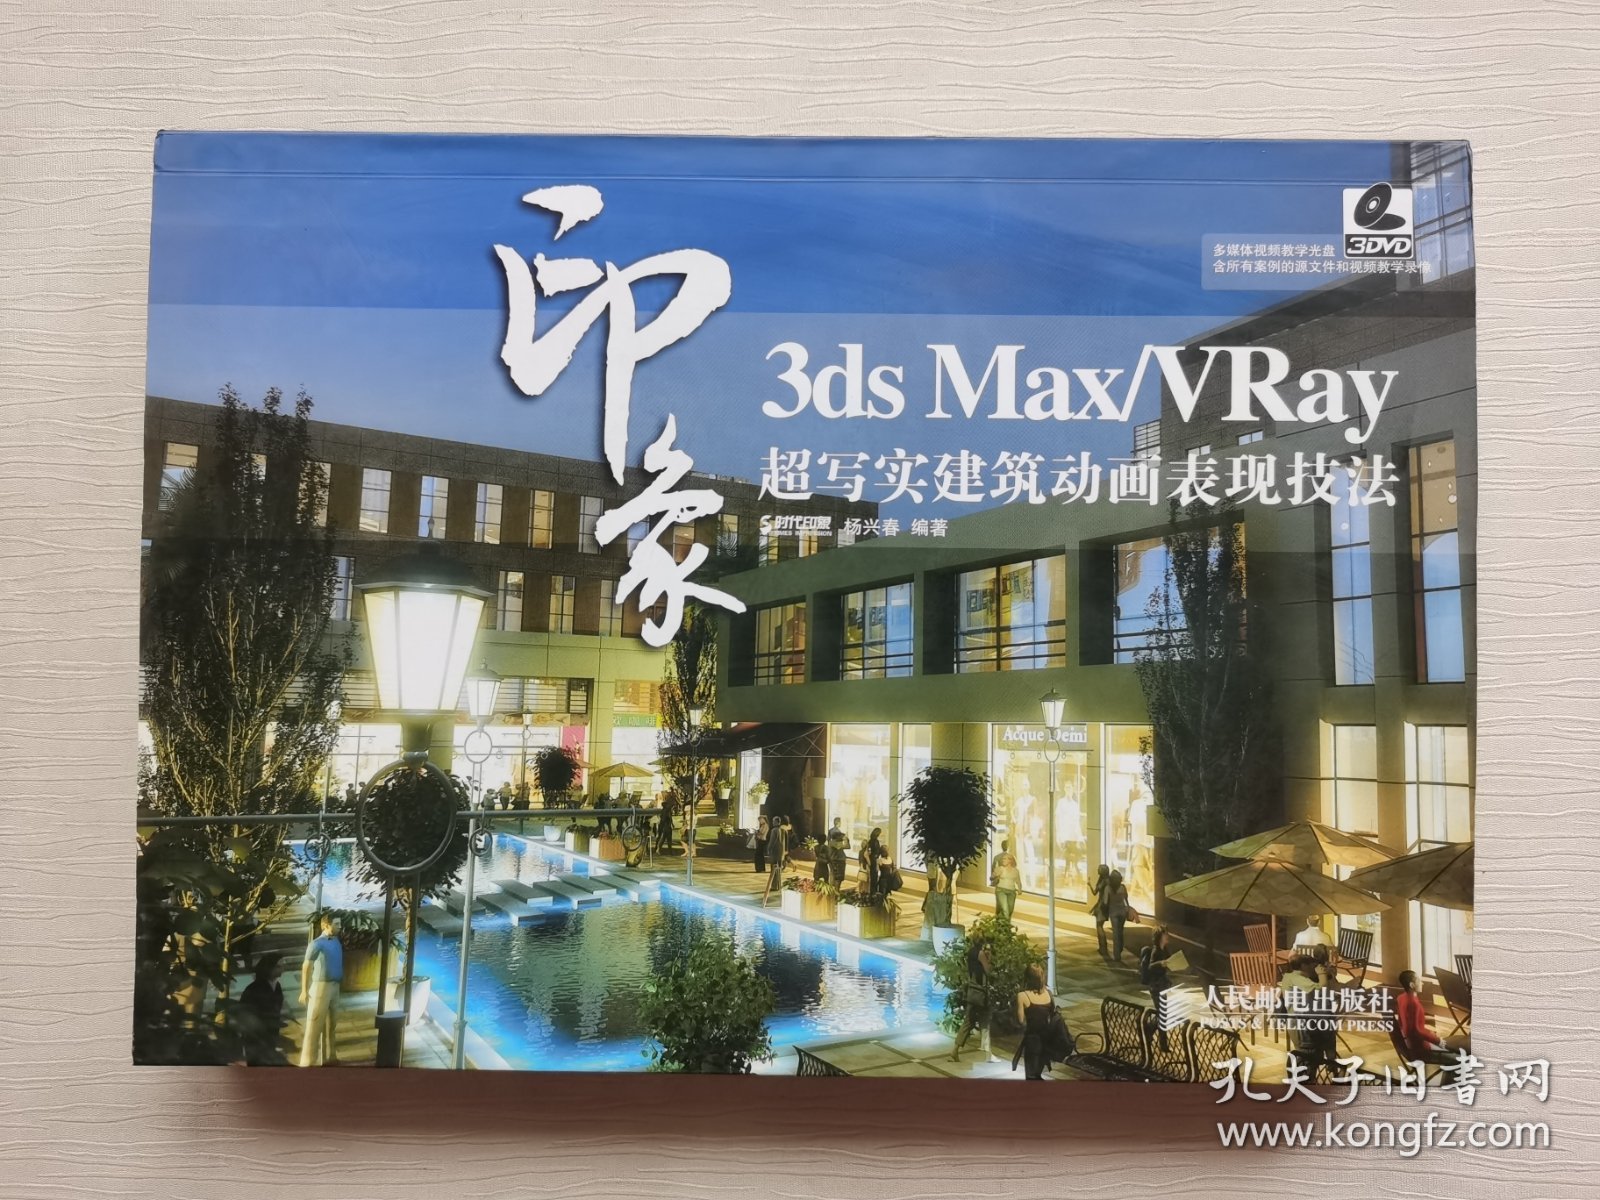 3ds Max/VRay印象：超写实建筑动画表现技法